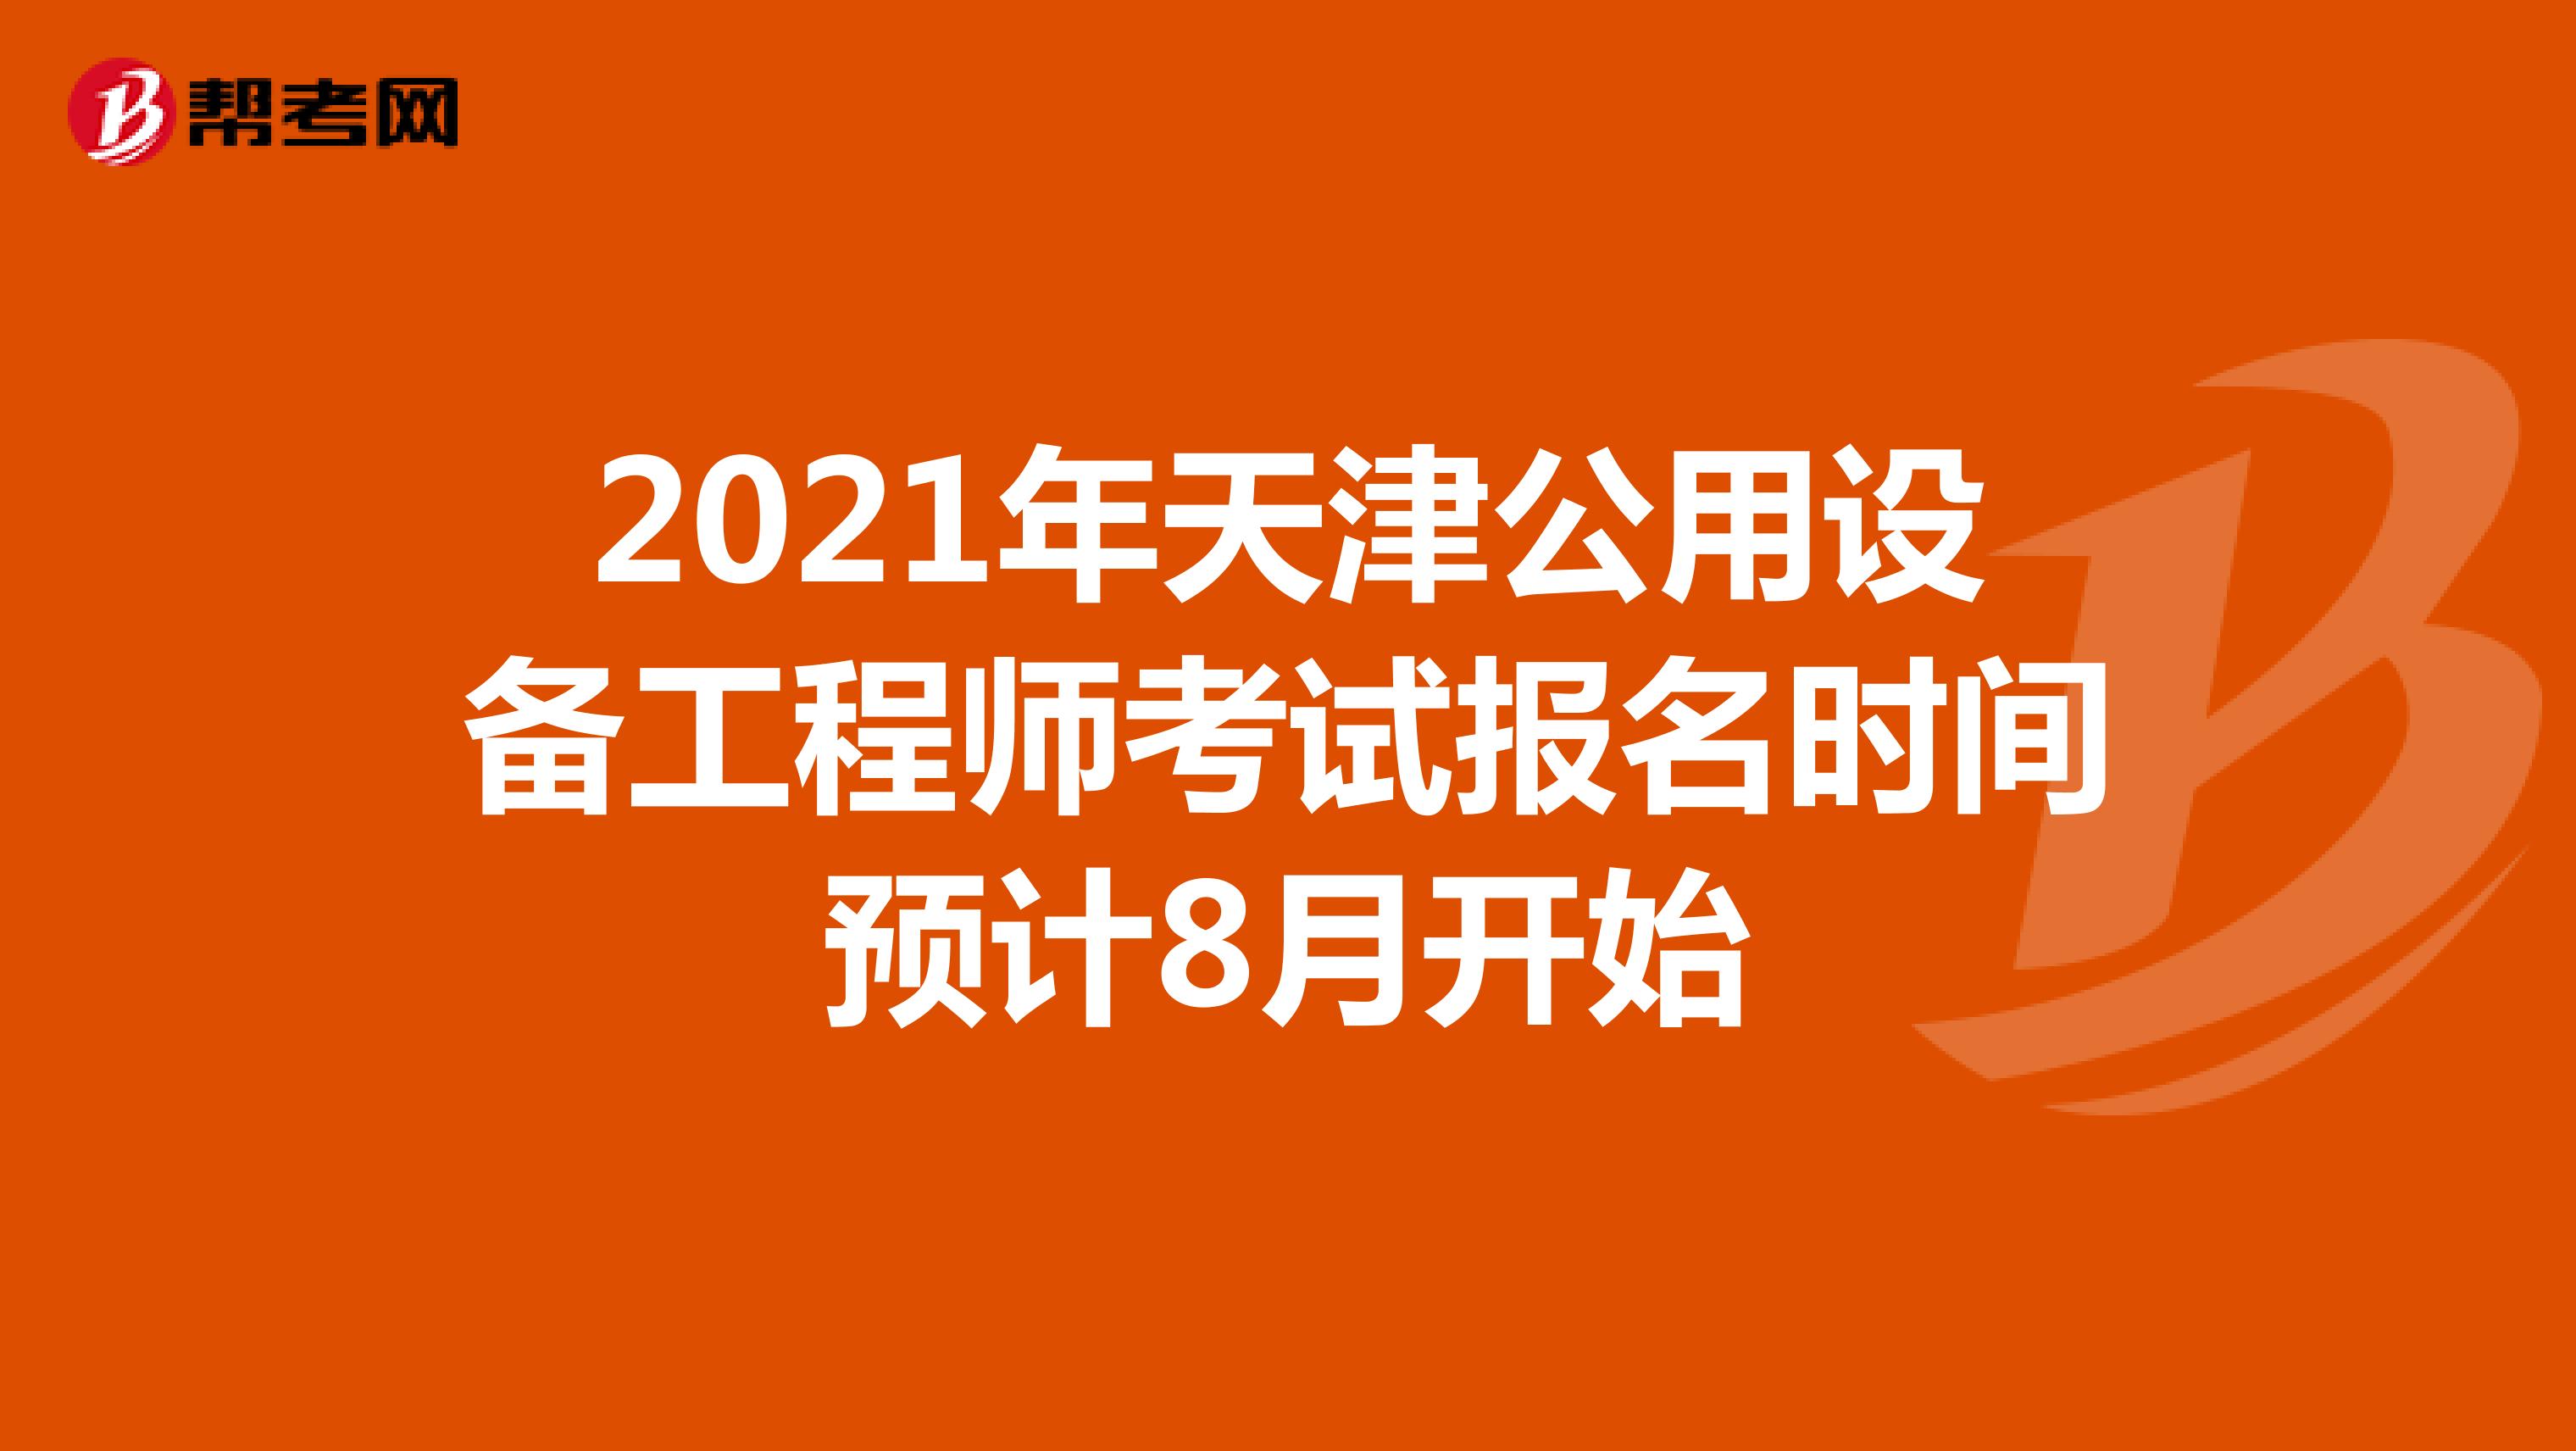 2021年天津公用设备工程师考试报名时间预计8月开始